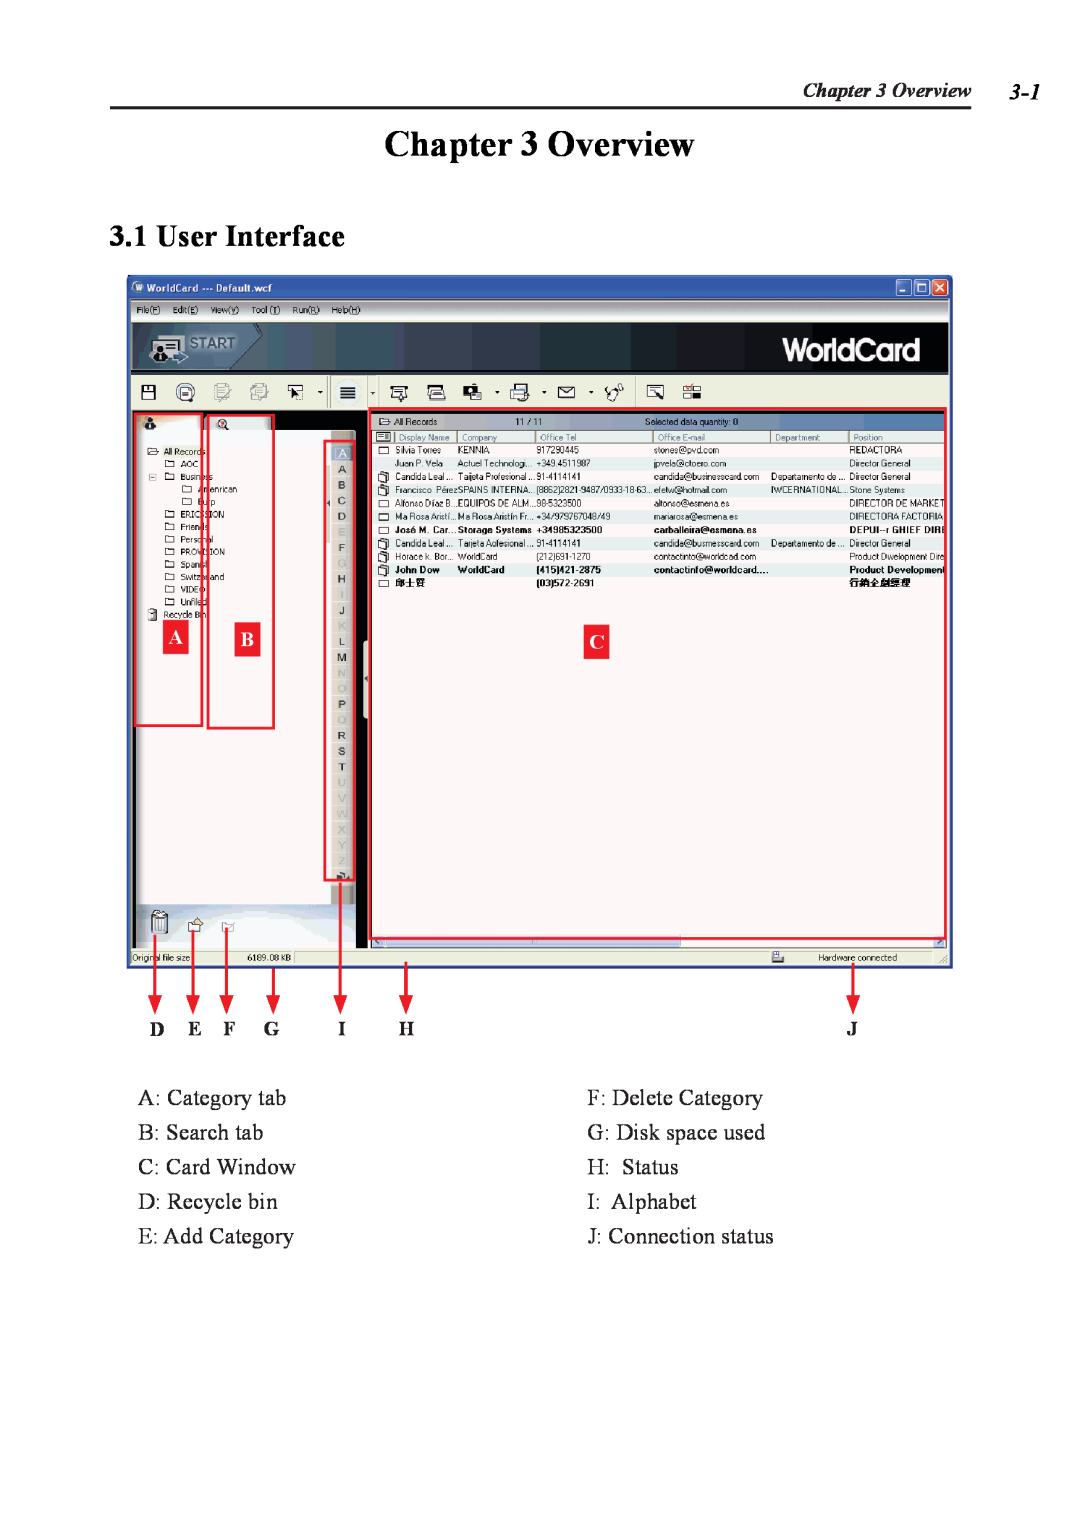 Penpower duet 2 user manual Overview, User Interface 